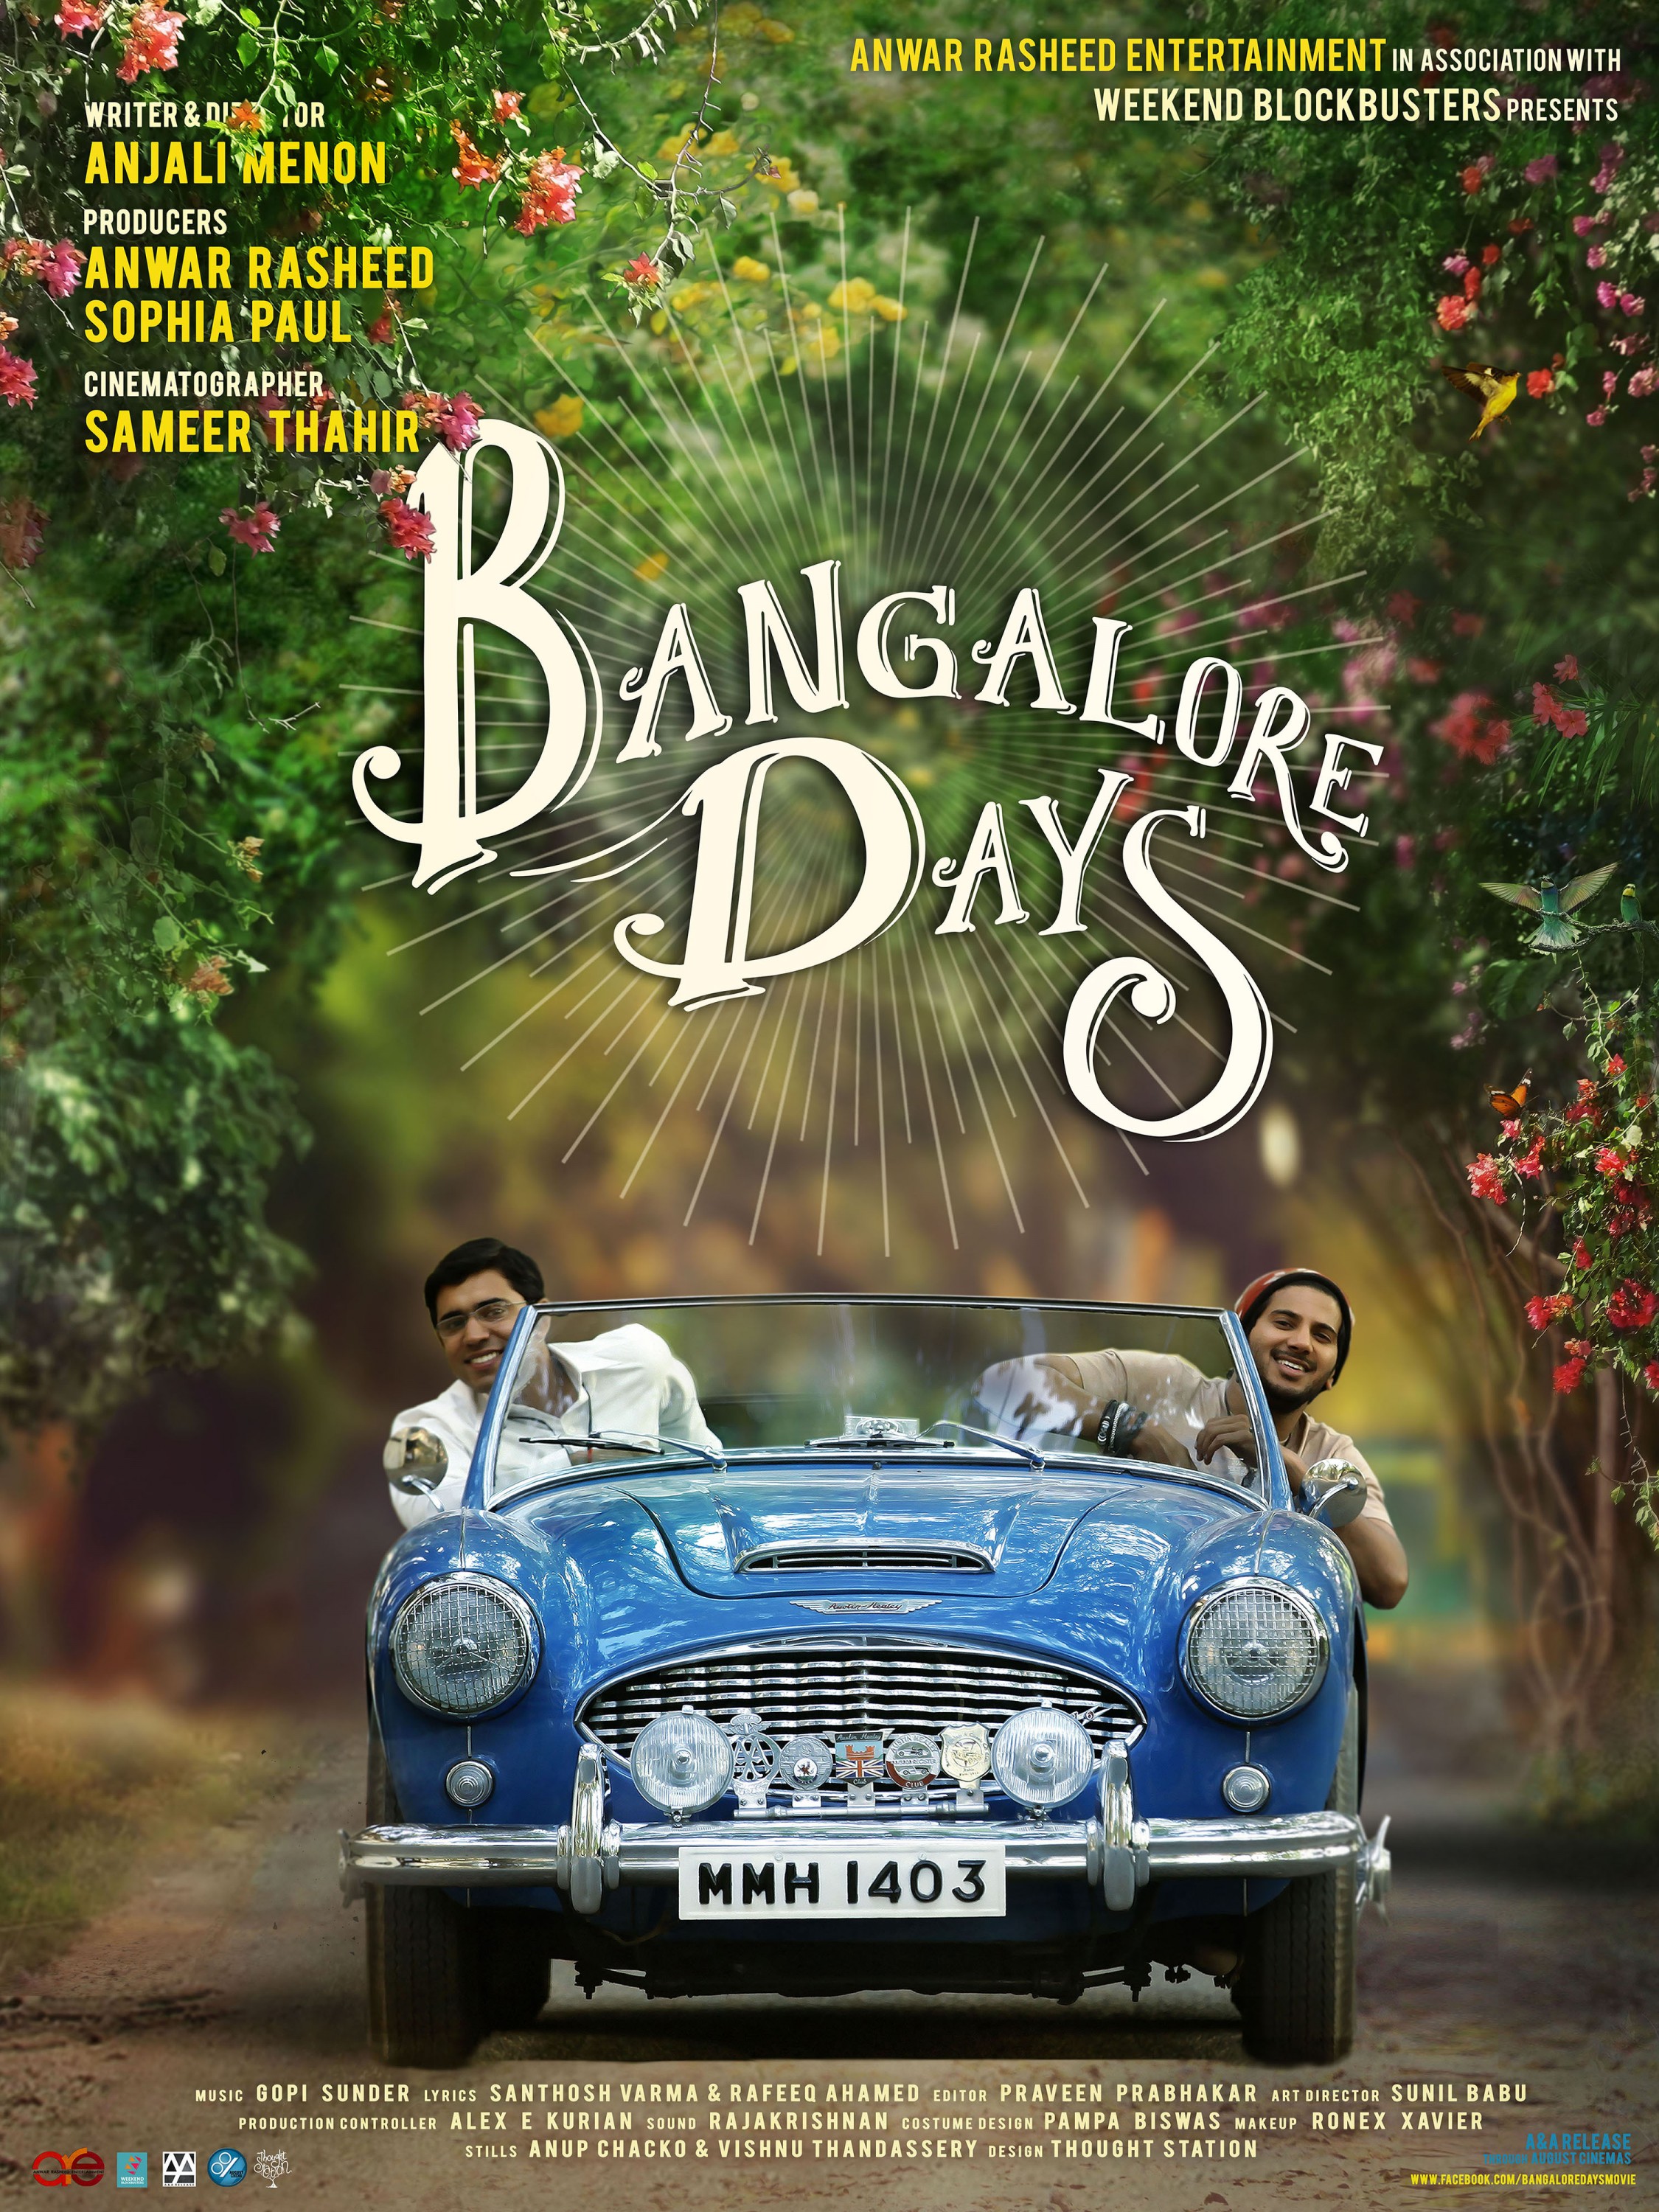 Mega Sized Movie Poster Image for Bangalore Days (#2 of 7)